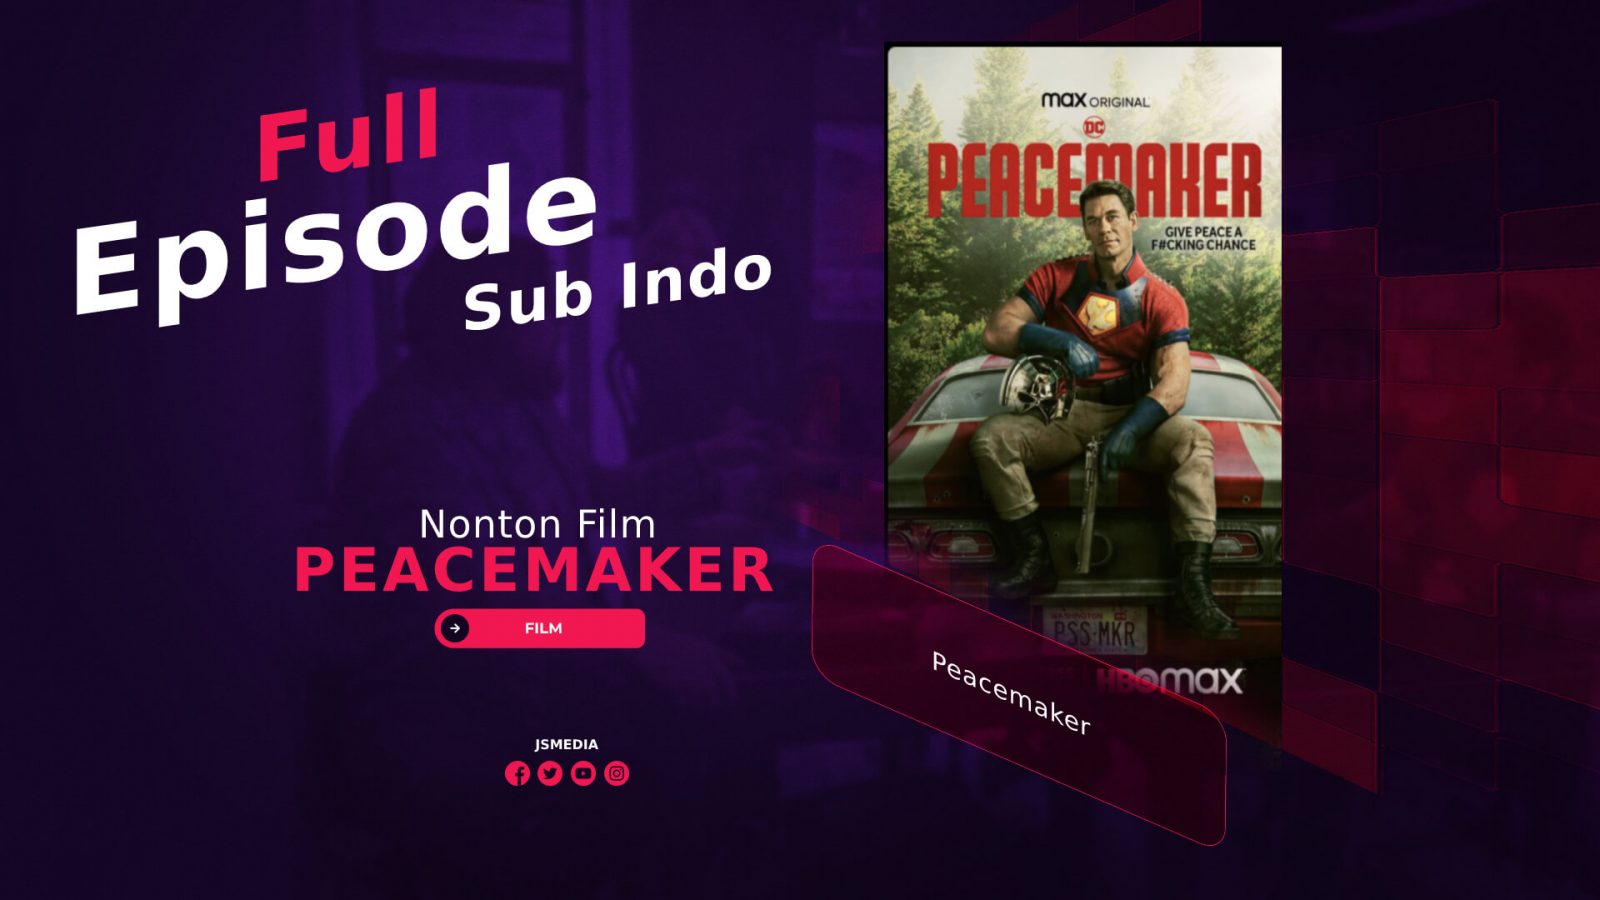 Nonton Film Peacemaker Full Episode Sub Indo